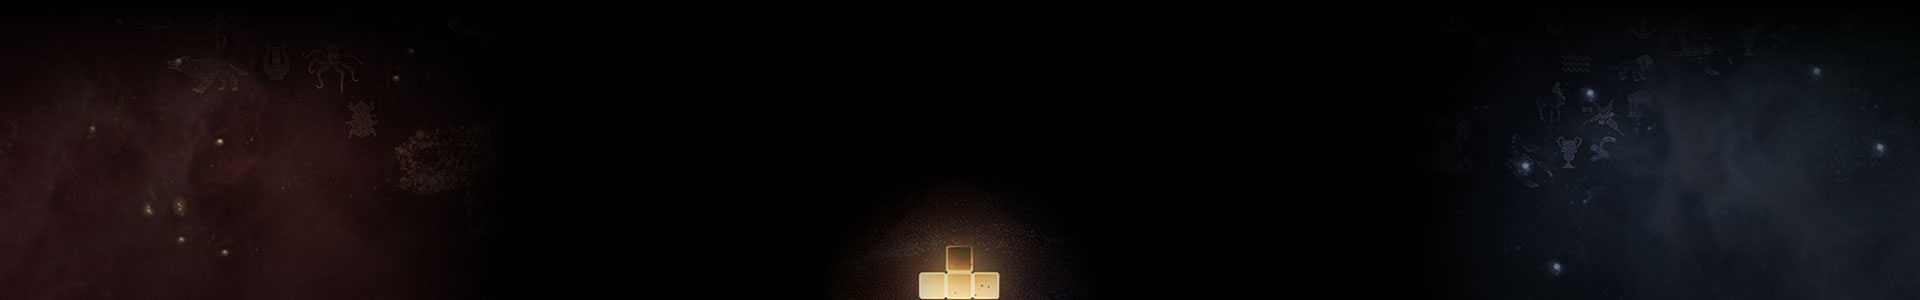 Ein leuchtendes Tetris-Element befindet sich zwischen den Sternen.